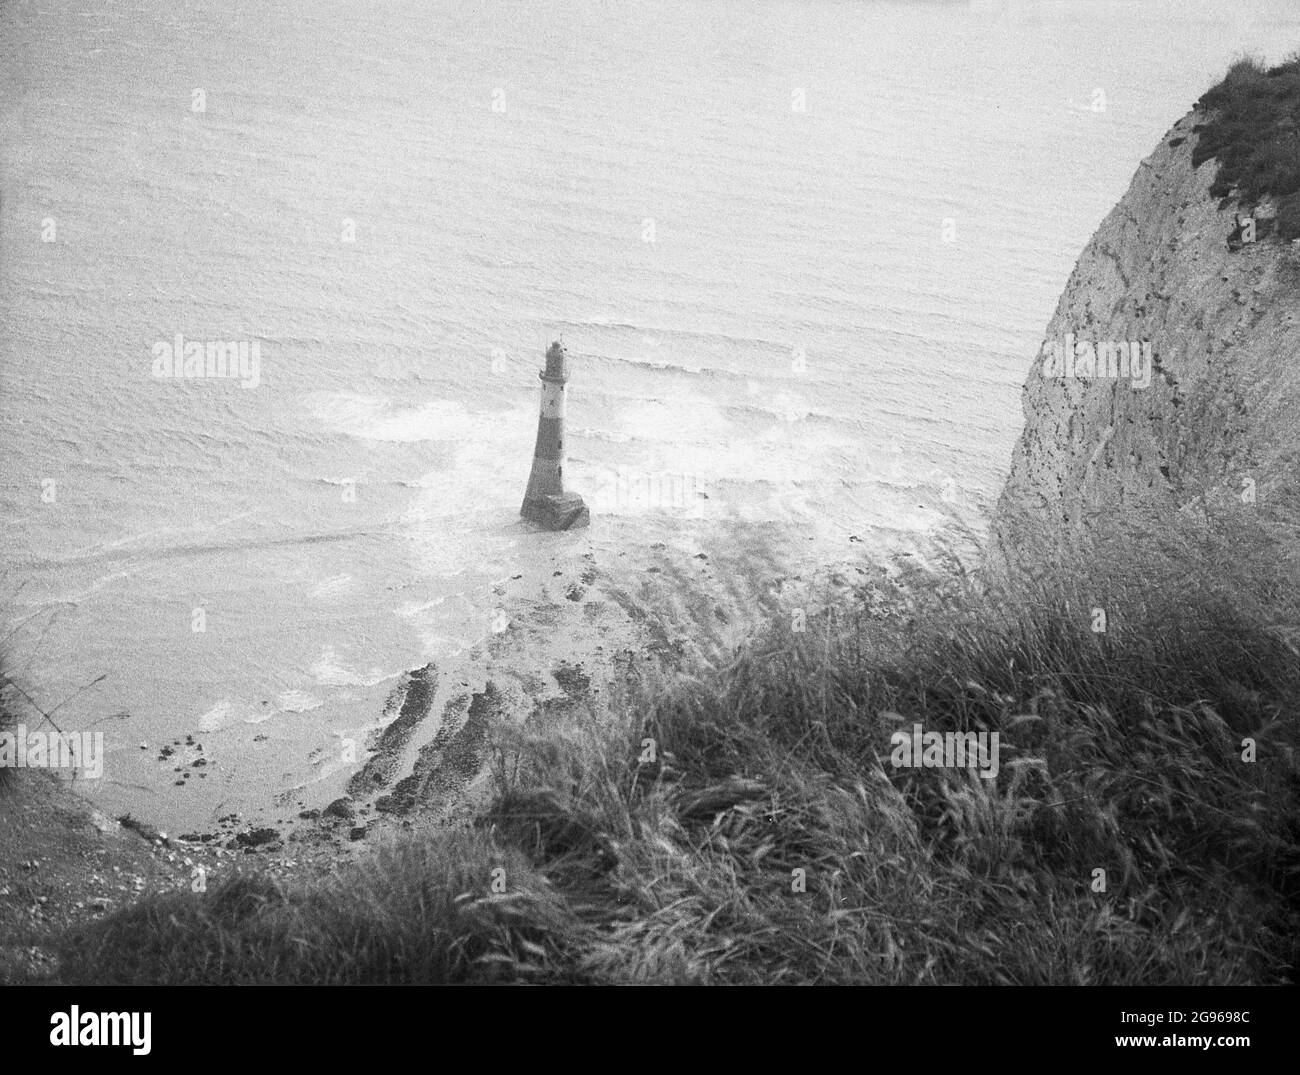 1950s, historique, le phare offshore au pied de la baie à Beachy Head, une célèbre pointe sur les South Downs à Eastbourne, East Sussex, Angleterre, Royaume-Uni. Une tour en granit, érigée en 1902 pour remplacer le phare Belle Tour au sommet des falaises, c'était la dernière « tour de roche » de style traditionnel à être construite en Angleterre. La plus haute falaise de la mer de craie en Grande-Bretagne, Beachy Head et ses vallons environnants sont un endroit magnifique pour la marche de plaisir. En 1929, par une loi du Parlement, les terres des South Downs ont été achetées pour protéger leur utilisation pour les générations futures. Banque D'Images